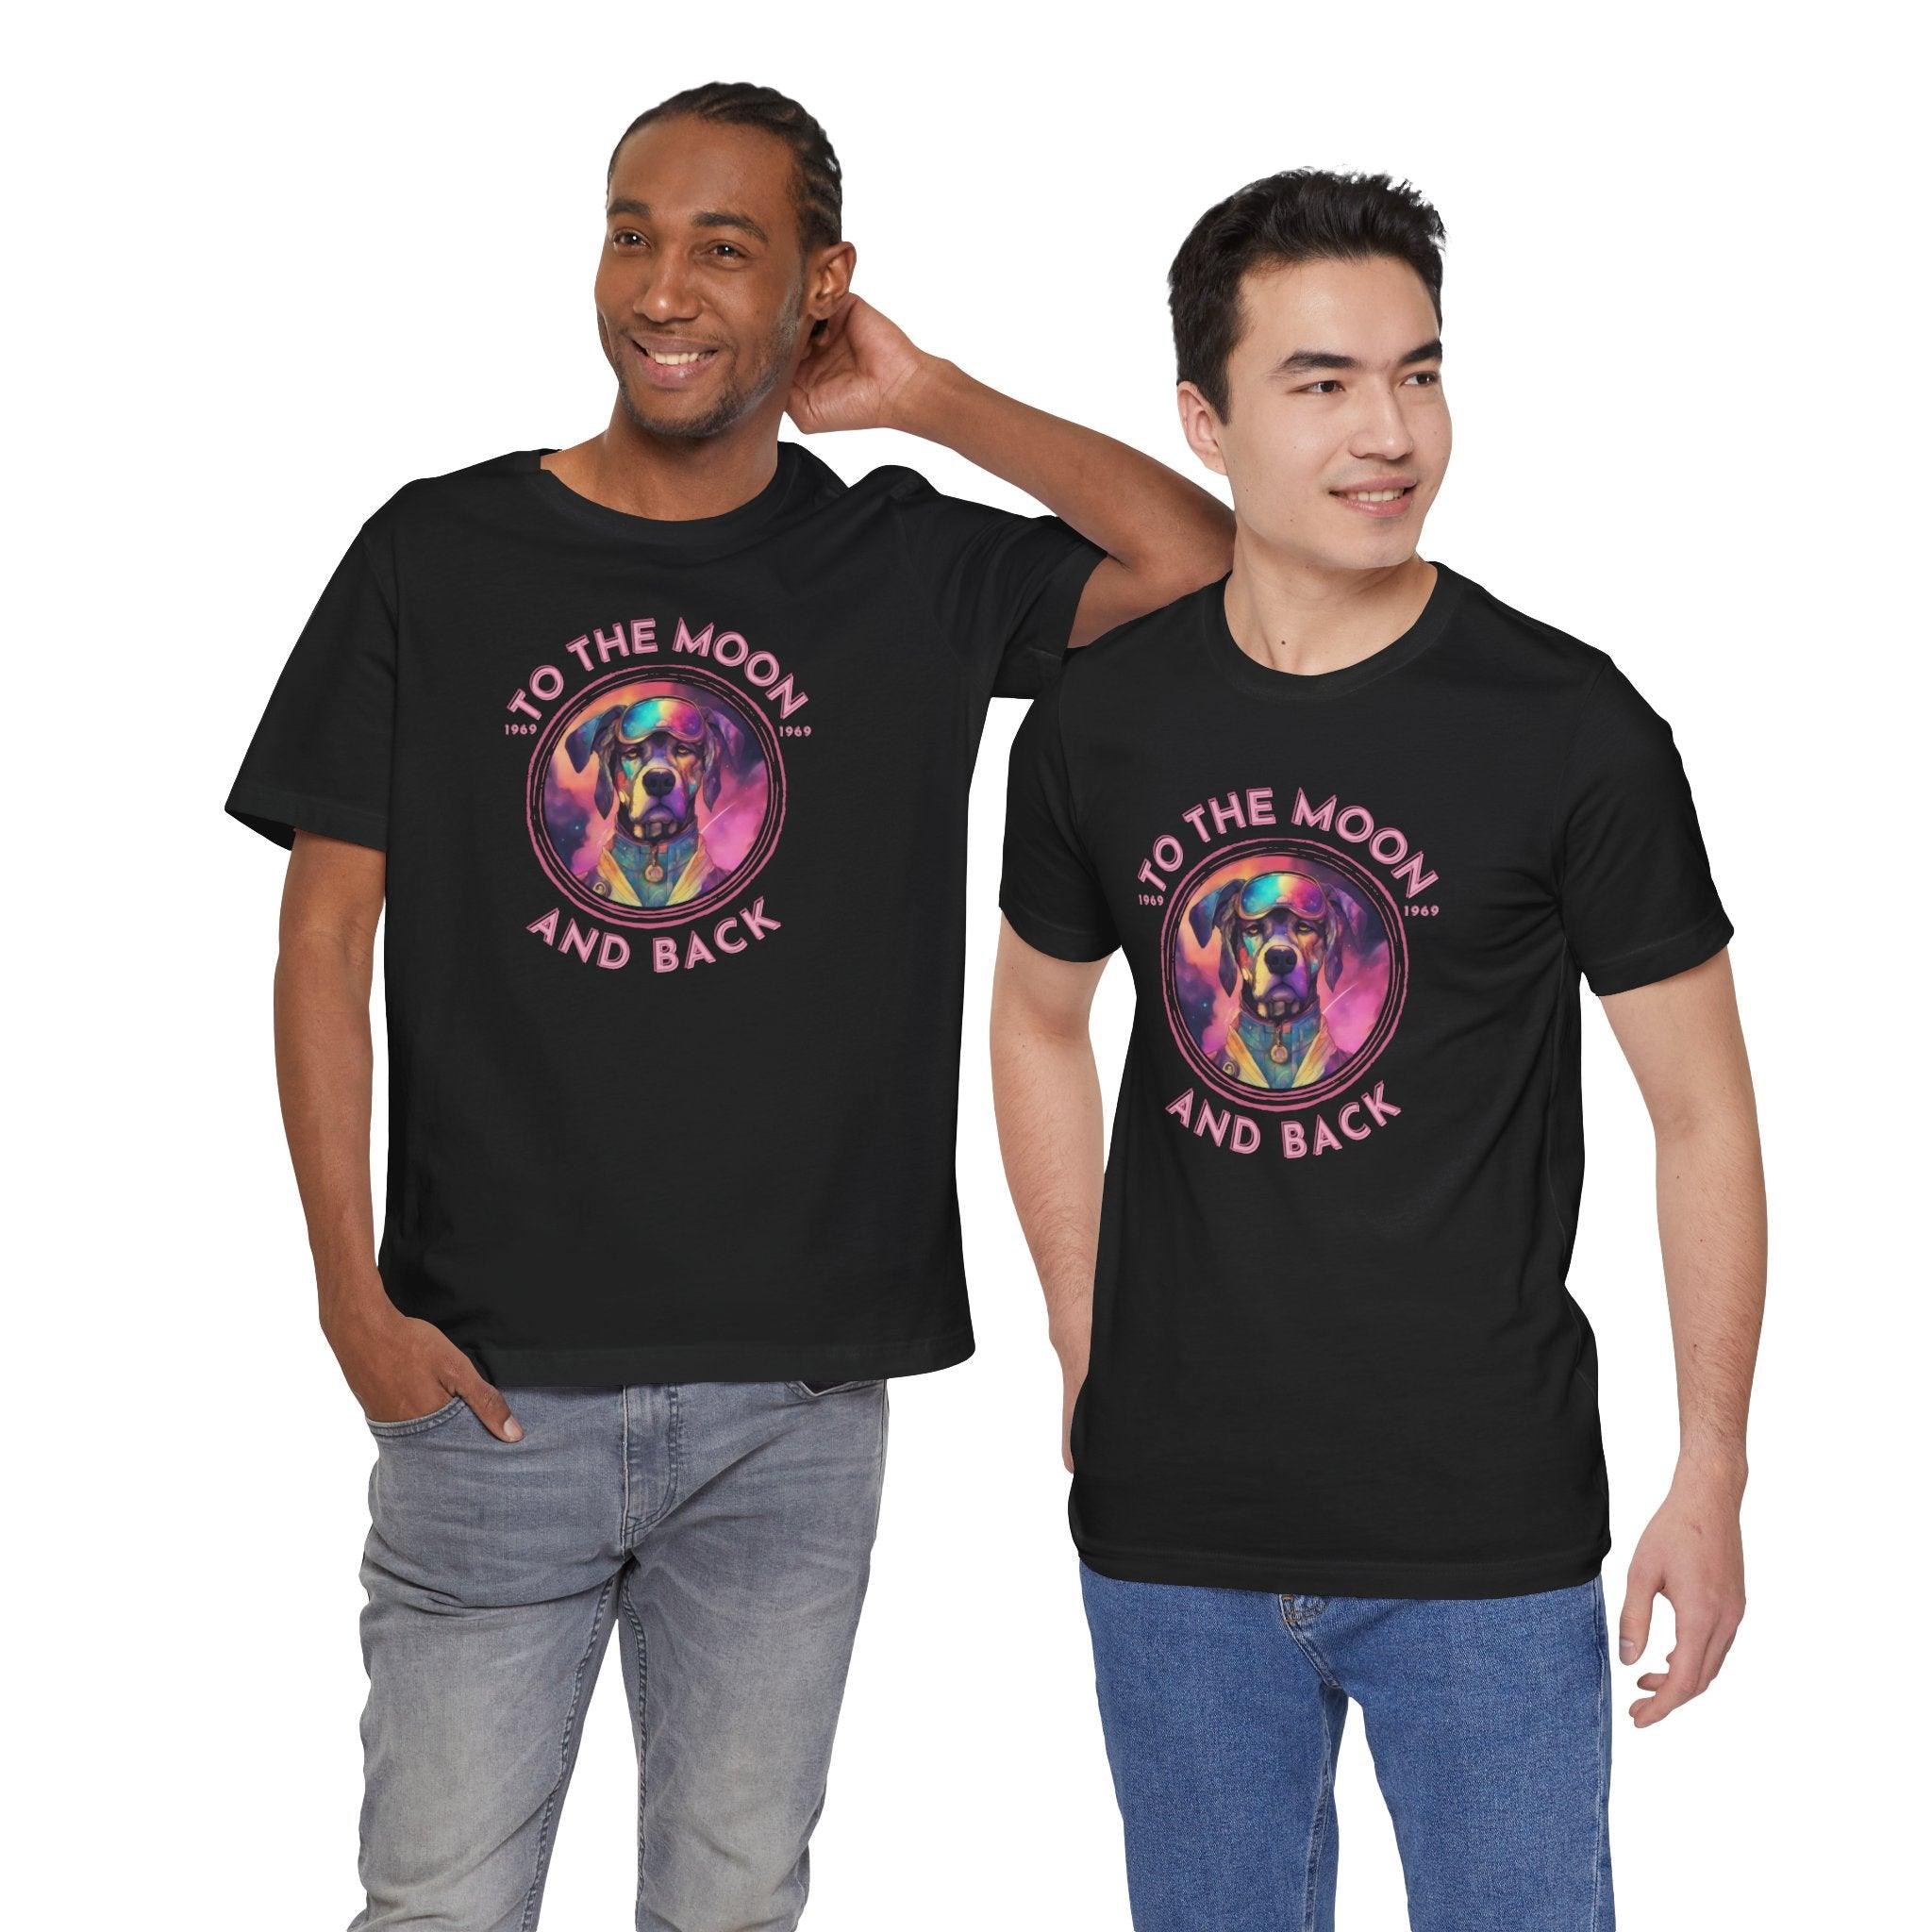 To the moon and back - Astrodog - Dog T-shirt - Soulshinecreators - Unisex Jersey Short Sleeve Tee - US - Soulshinecreators